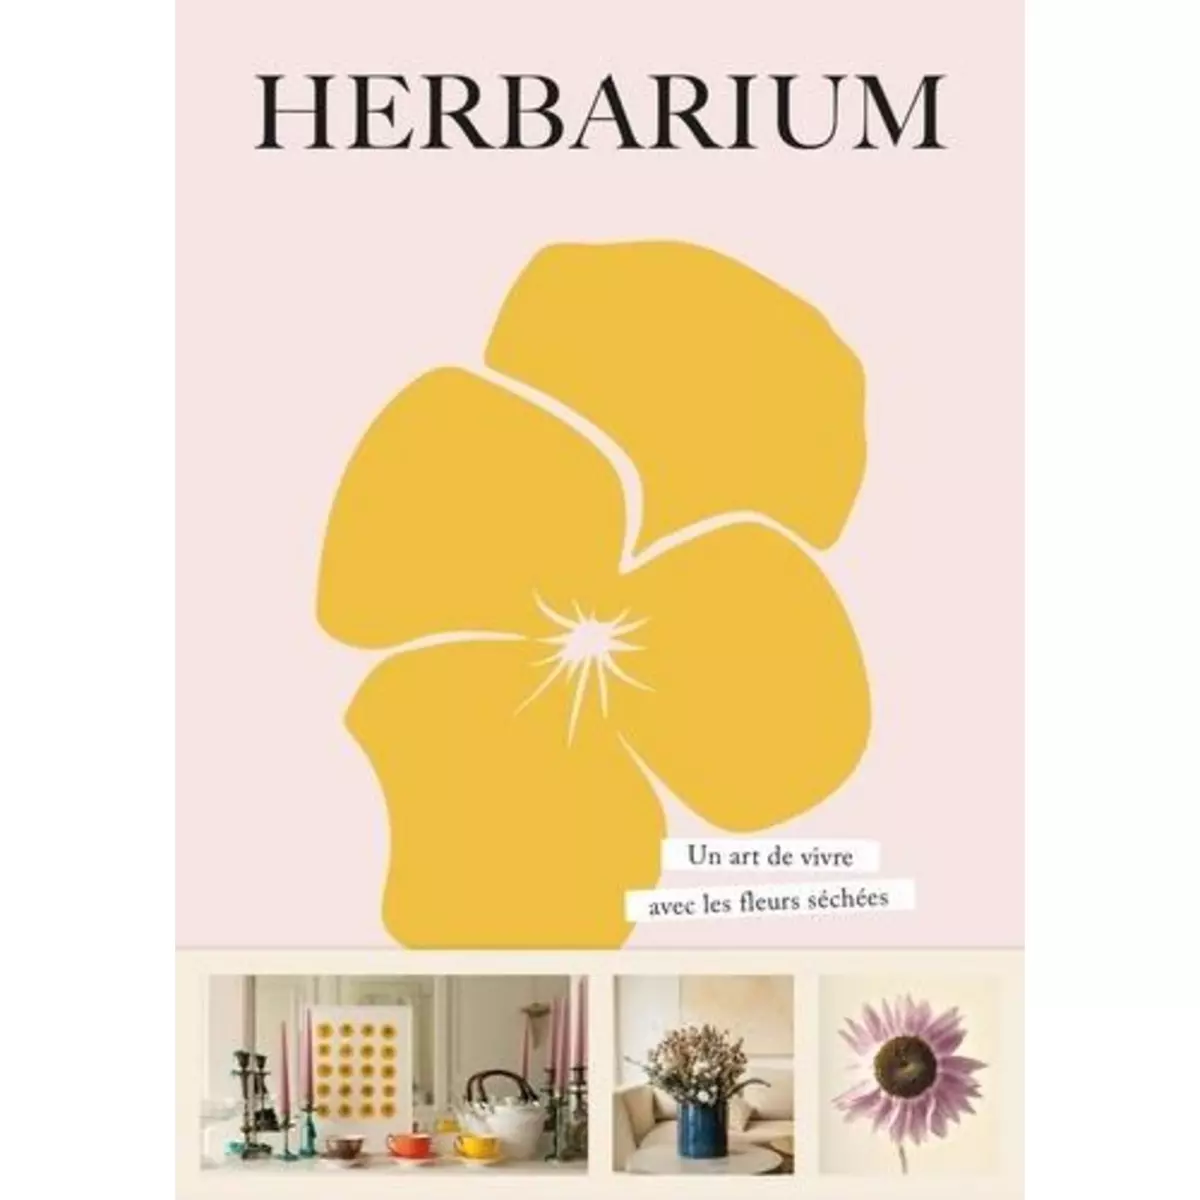  HERBARIUM. UN ART DE VIVRE AVEC LES FLEURS SECHEES, Epa Editions